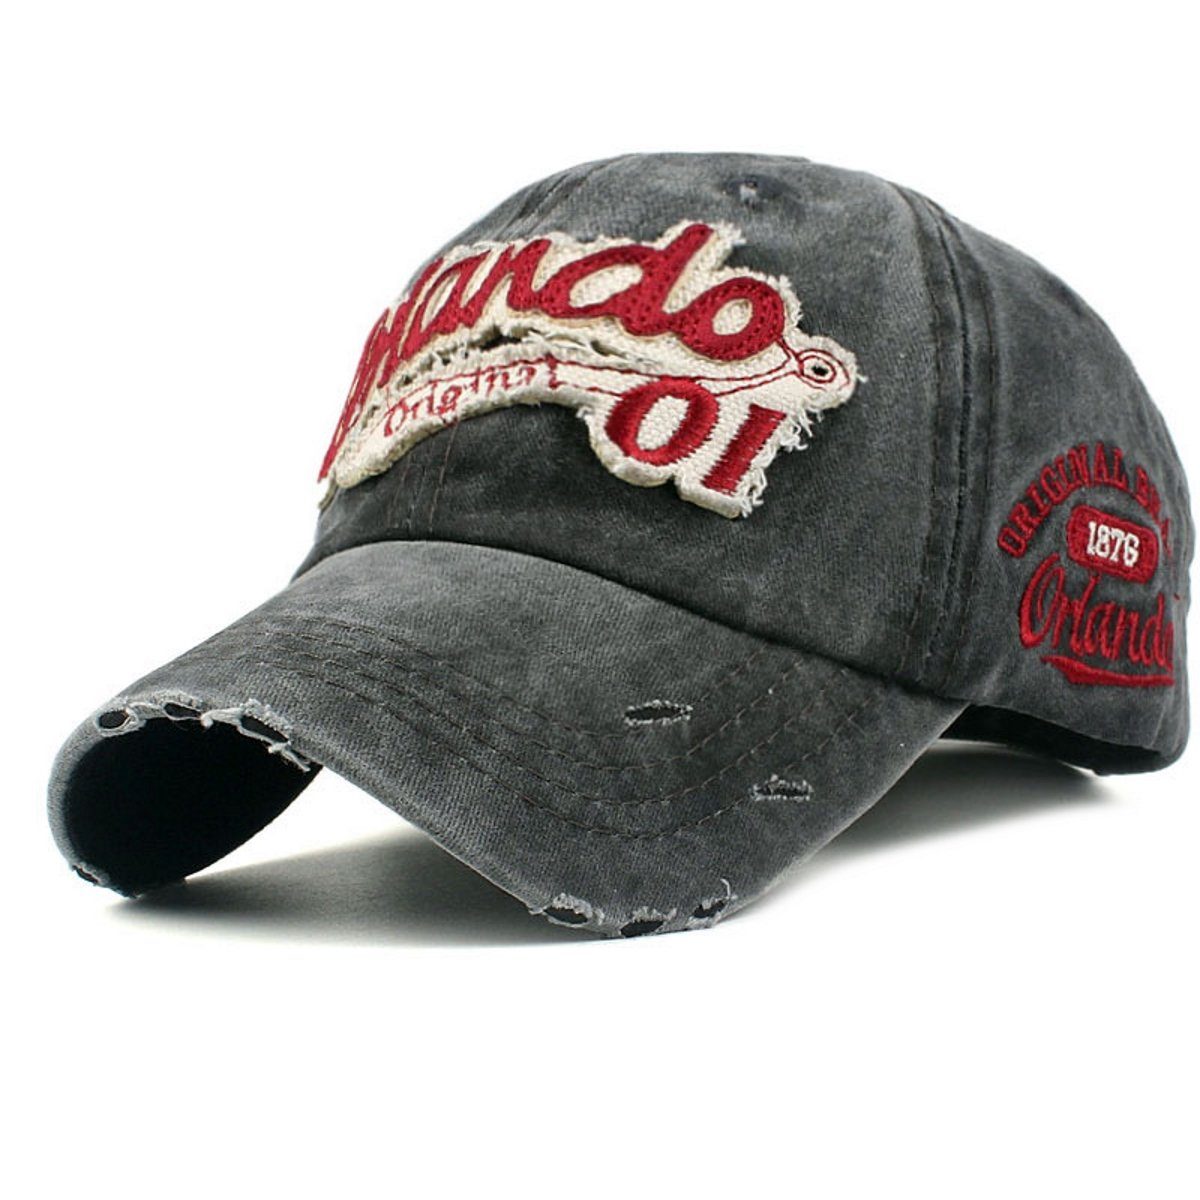 Style schwarz Vintage Retro Look Baseballcap Used Cap Washed Original Sporty Baseball Orlando